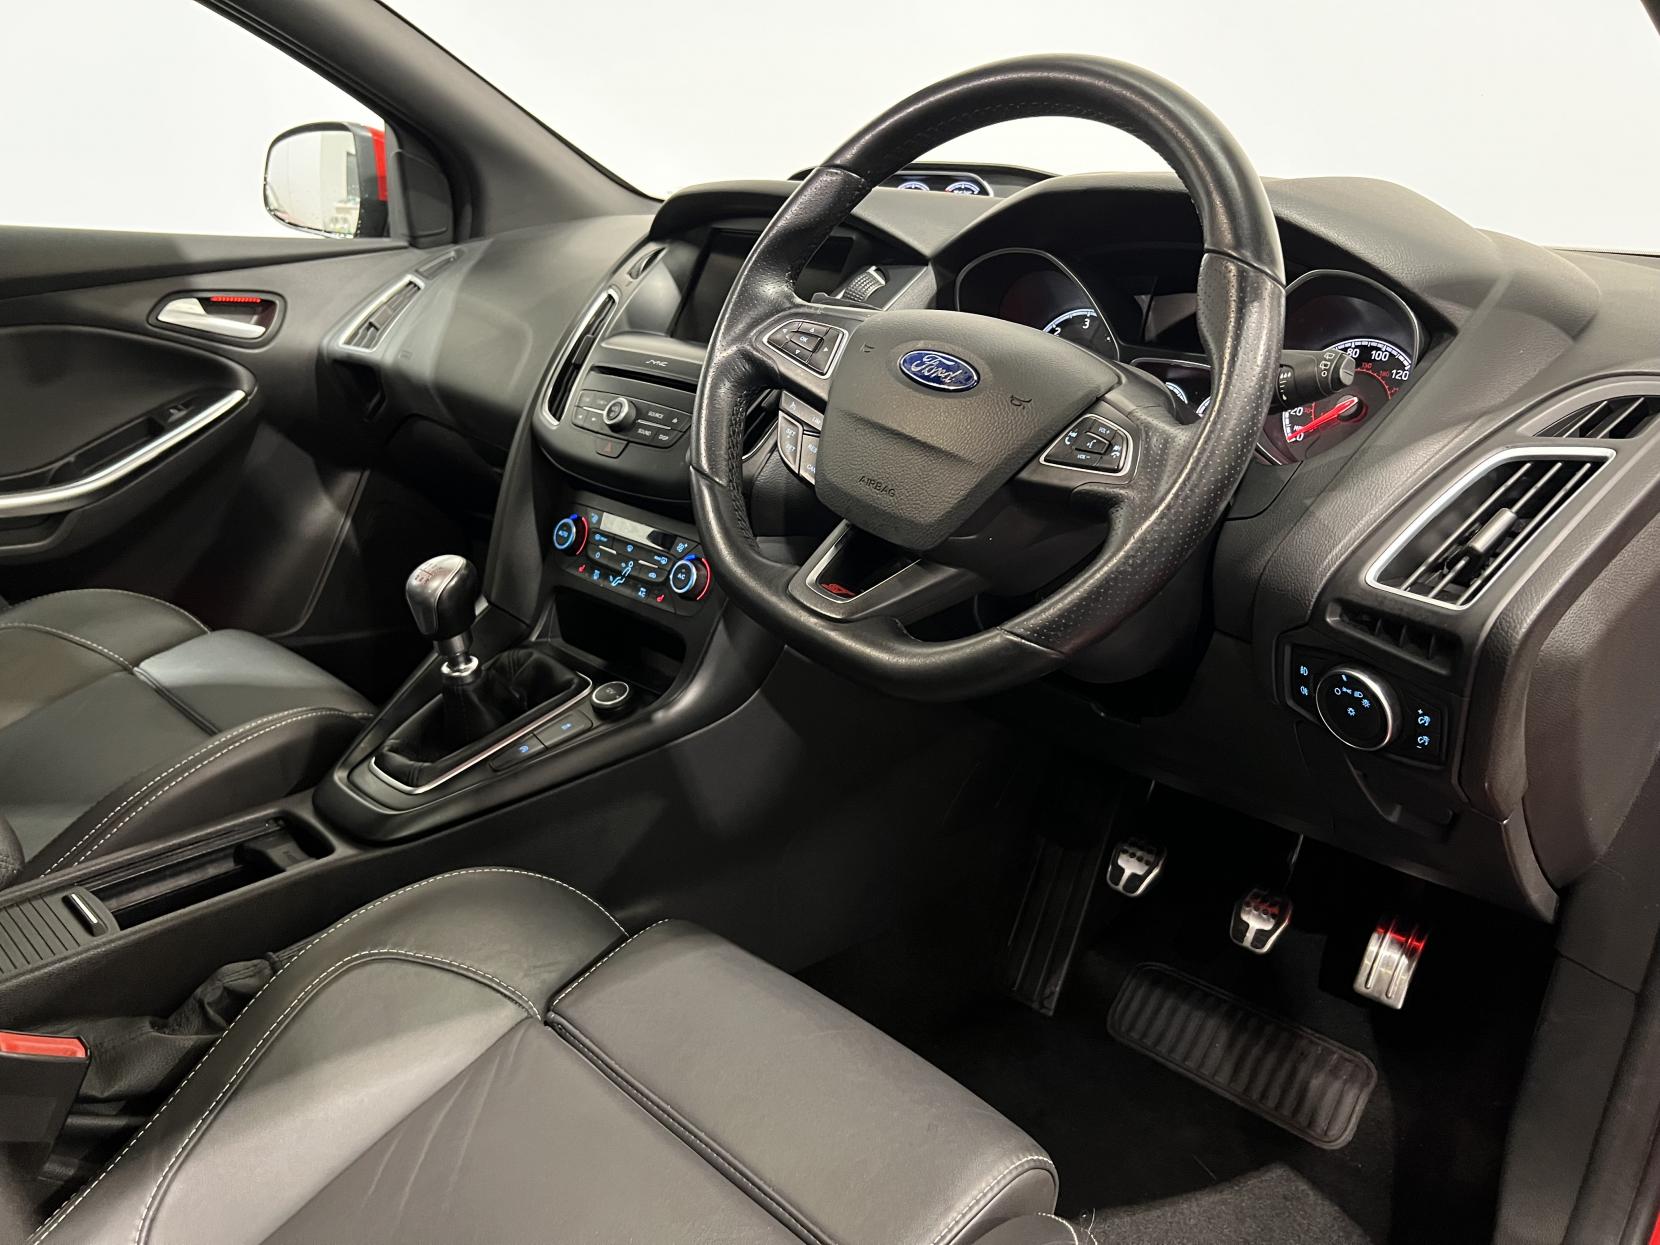 Ford Focus 2.0 TDCi ST-3 Hatchback 5dr Diesel Manual Euro 6 (s/s) (185 ps)